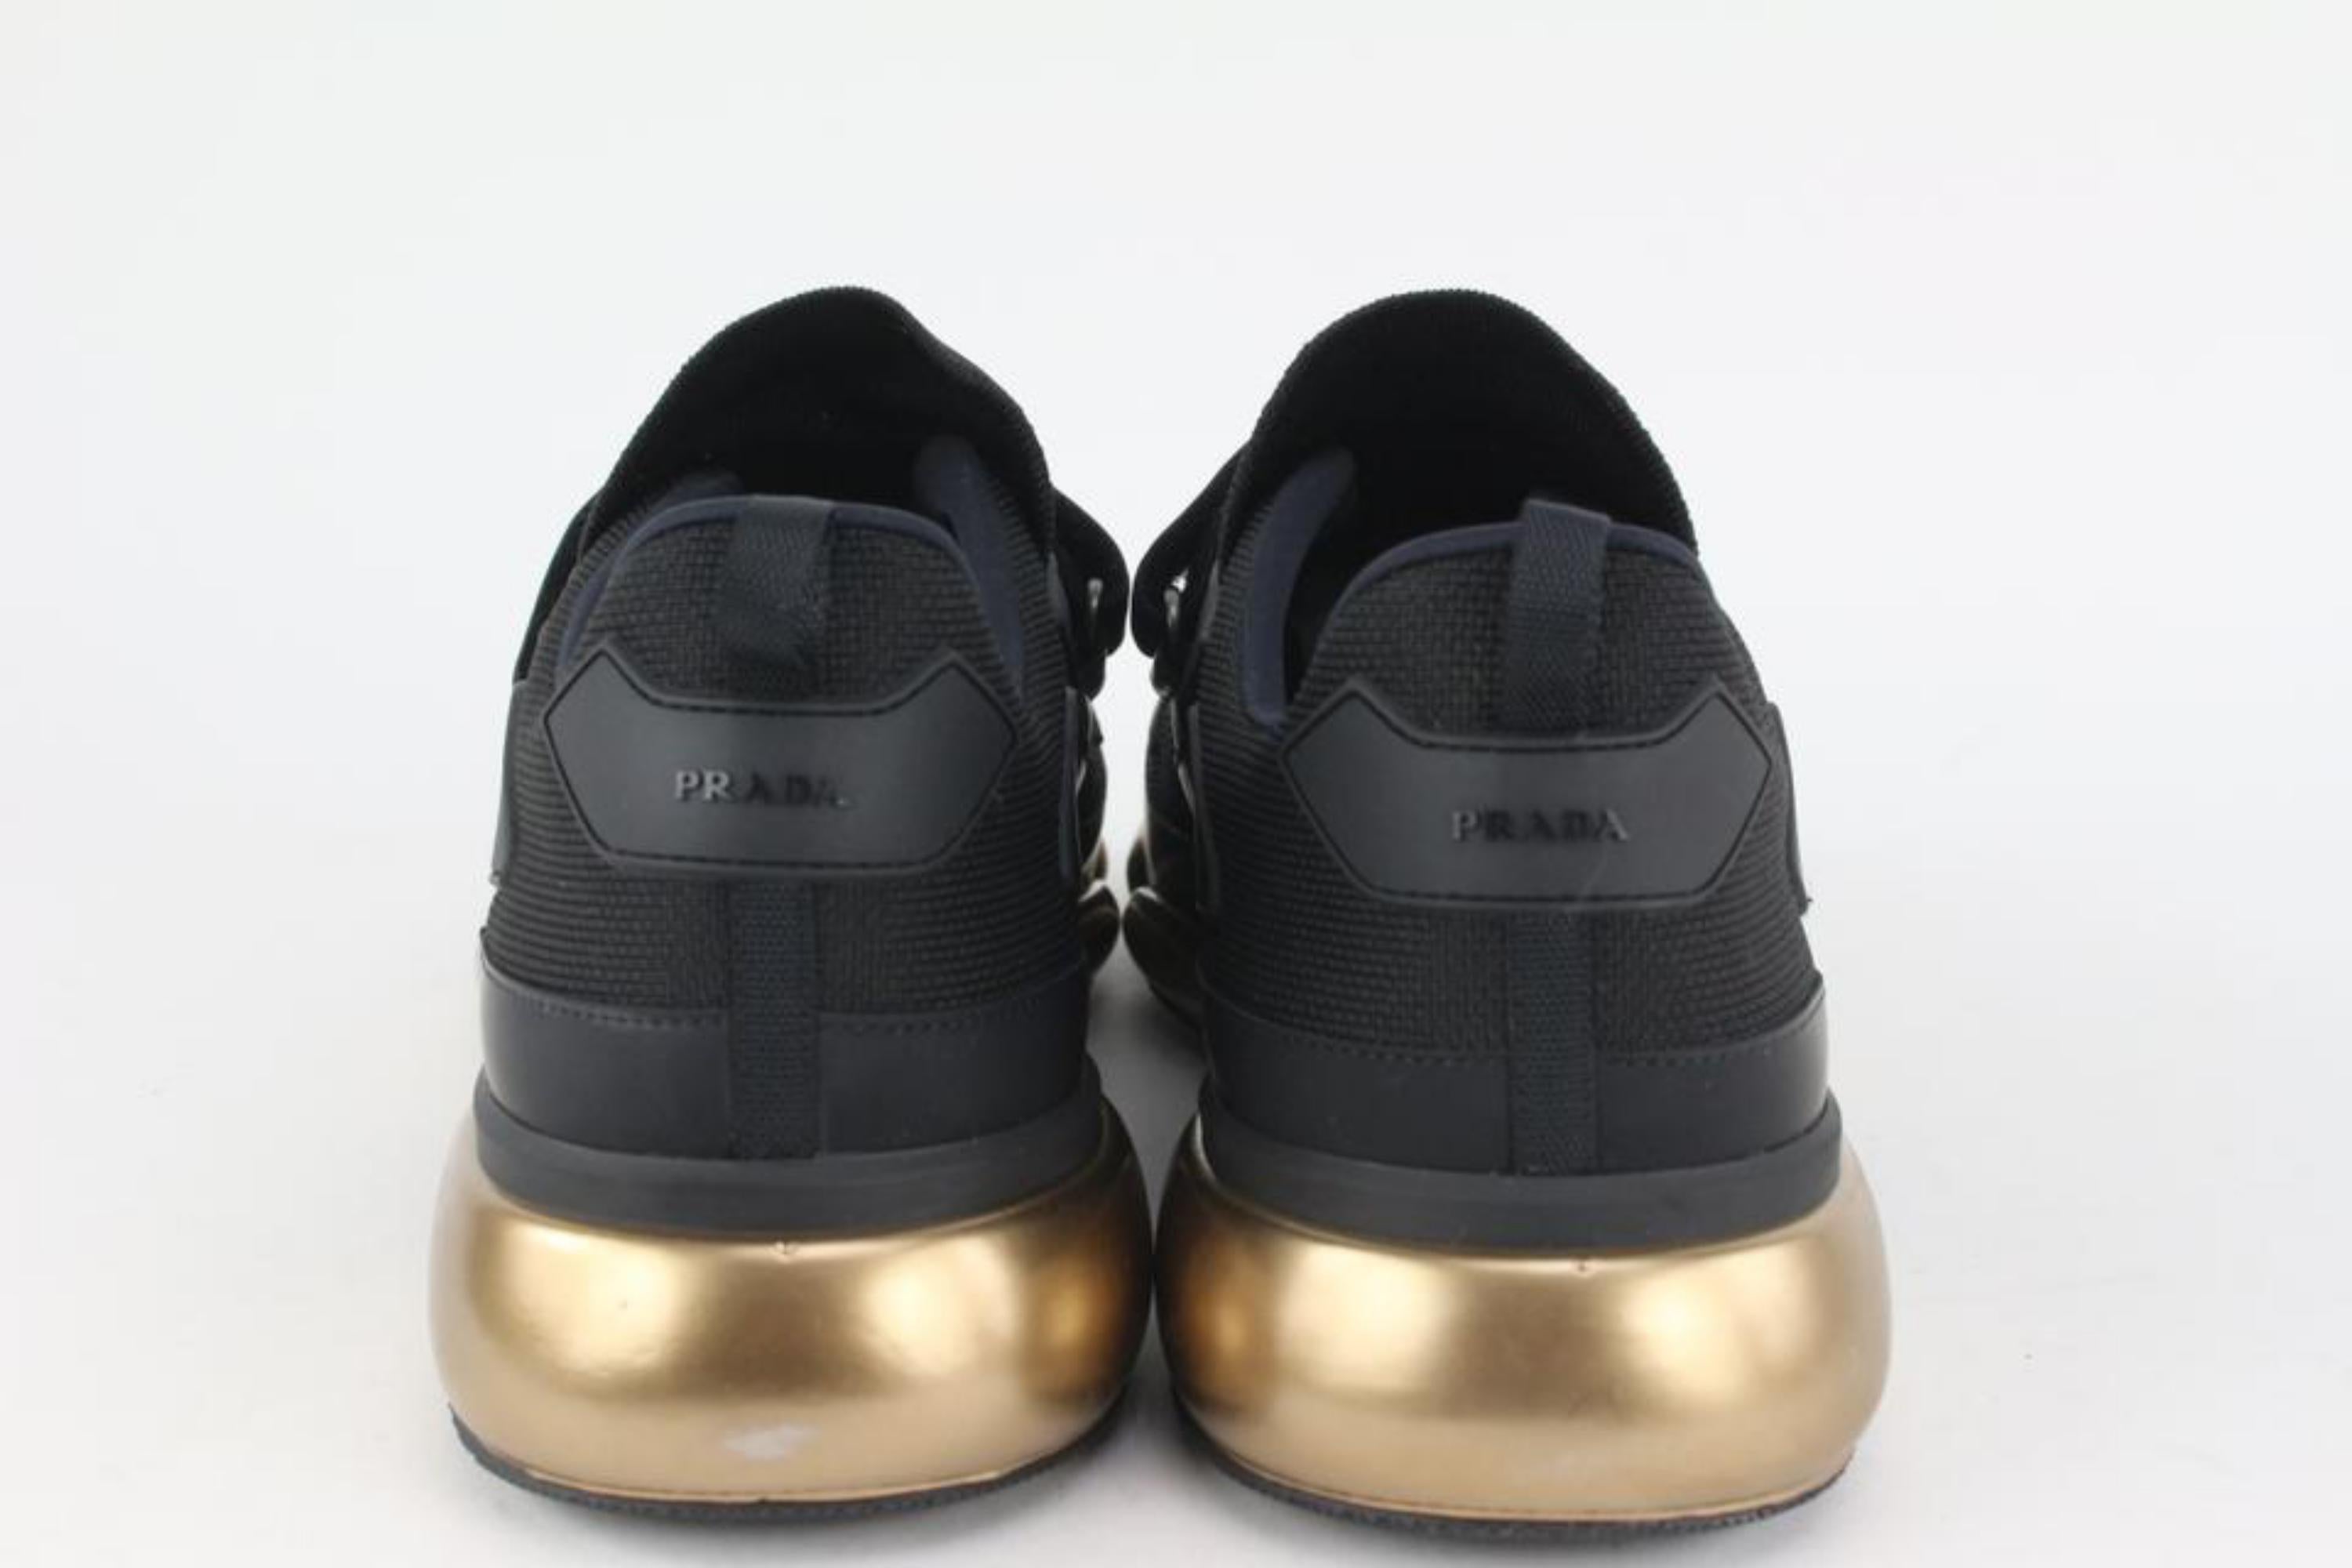 Prada Men's 11 20g064 Black x Gold Cloudbust Sneakers 1116p48 1